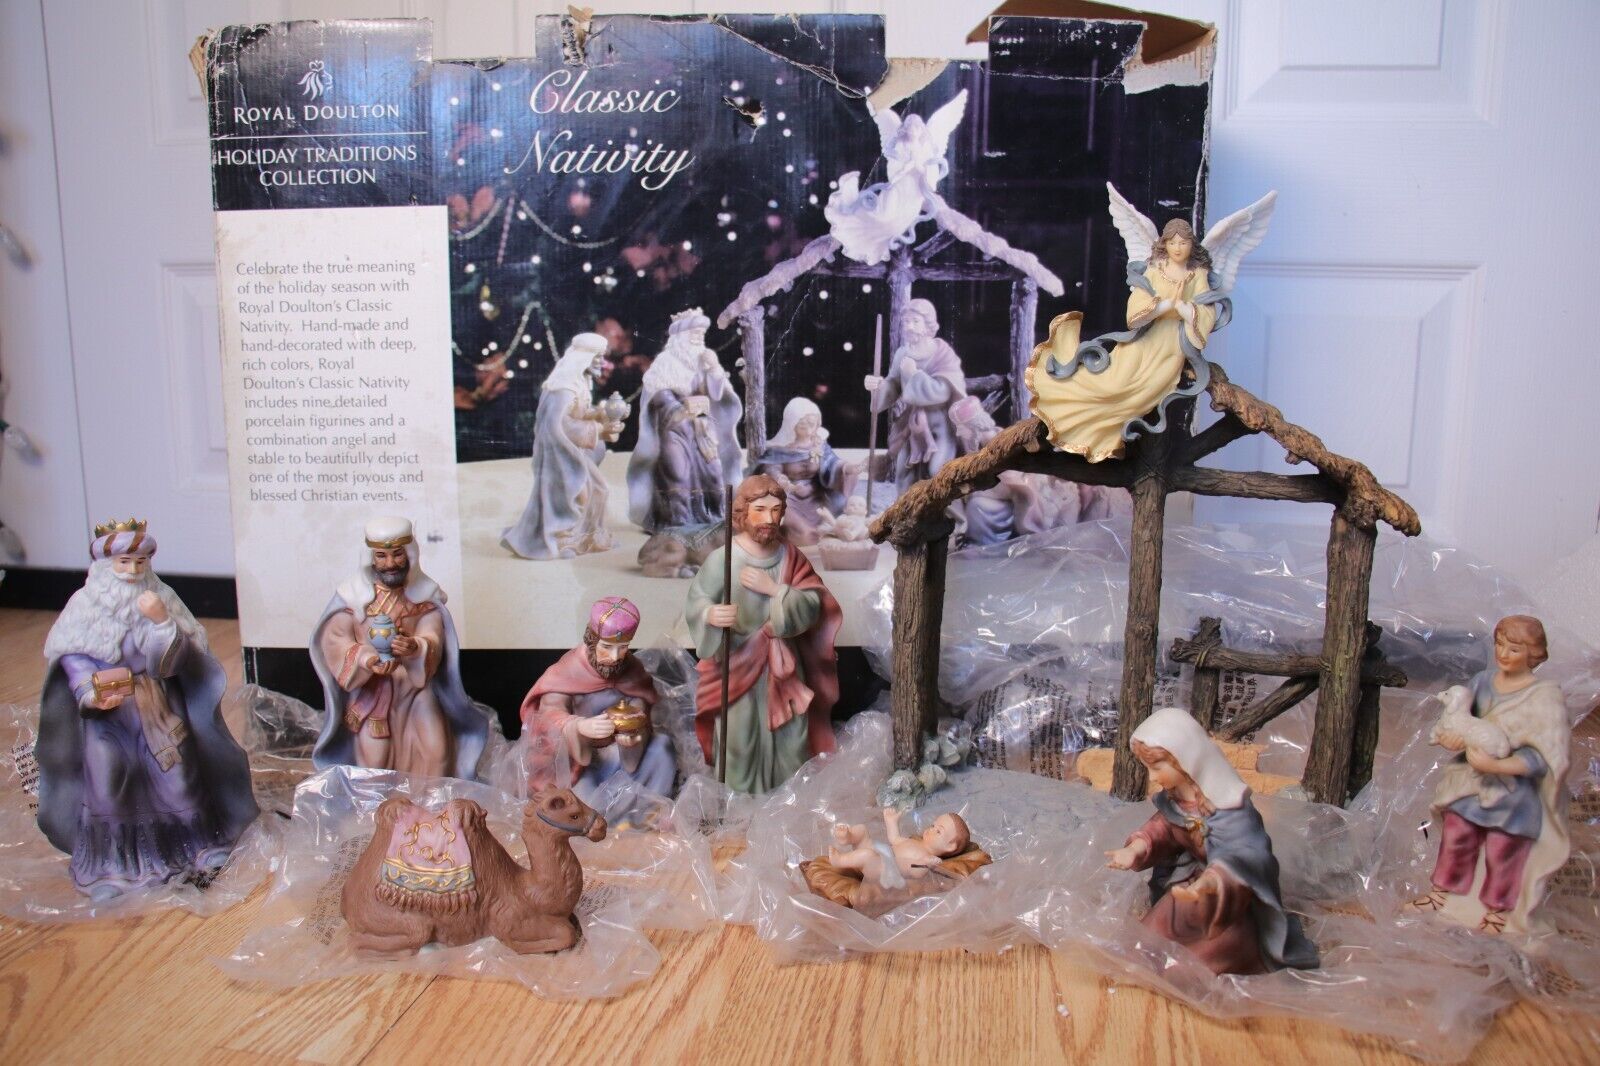 Royal Doulton Classic Nativity Set Rare -Christmas Holy Family Jesus Mary Joseph